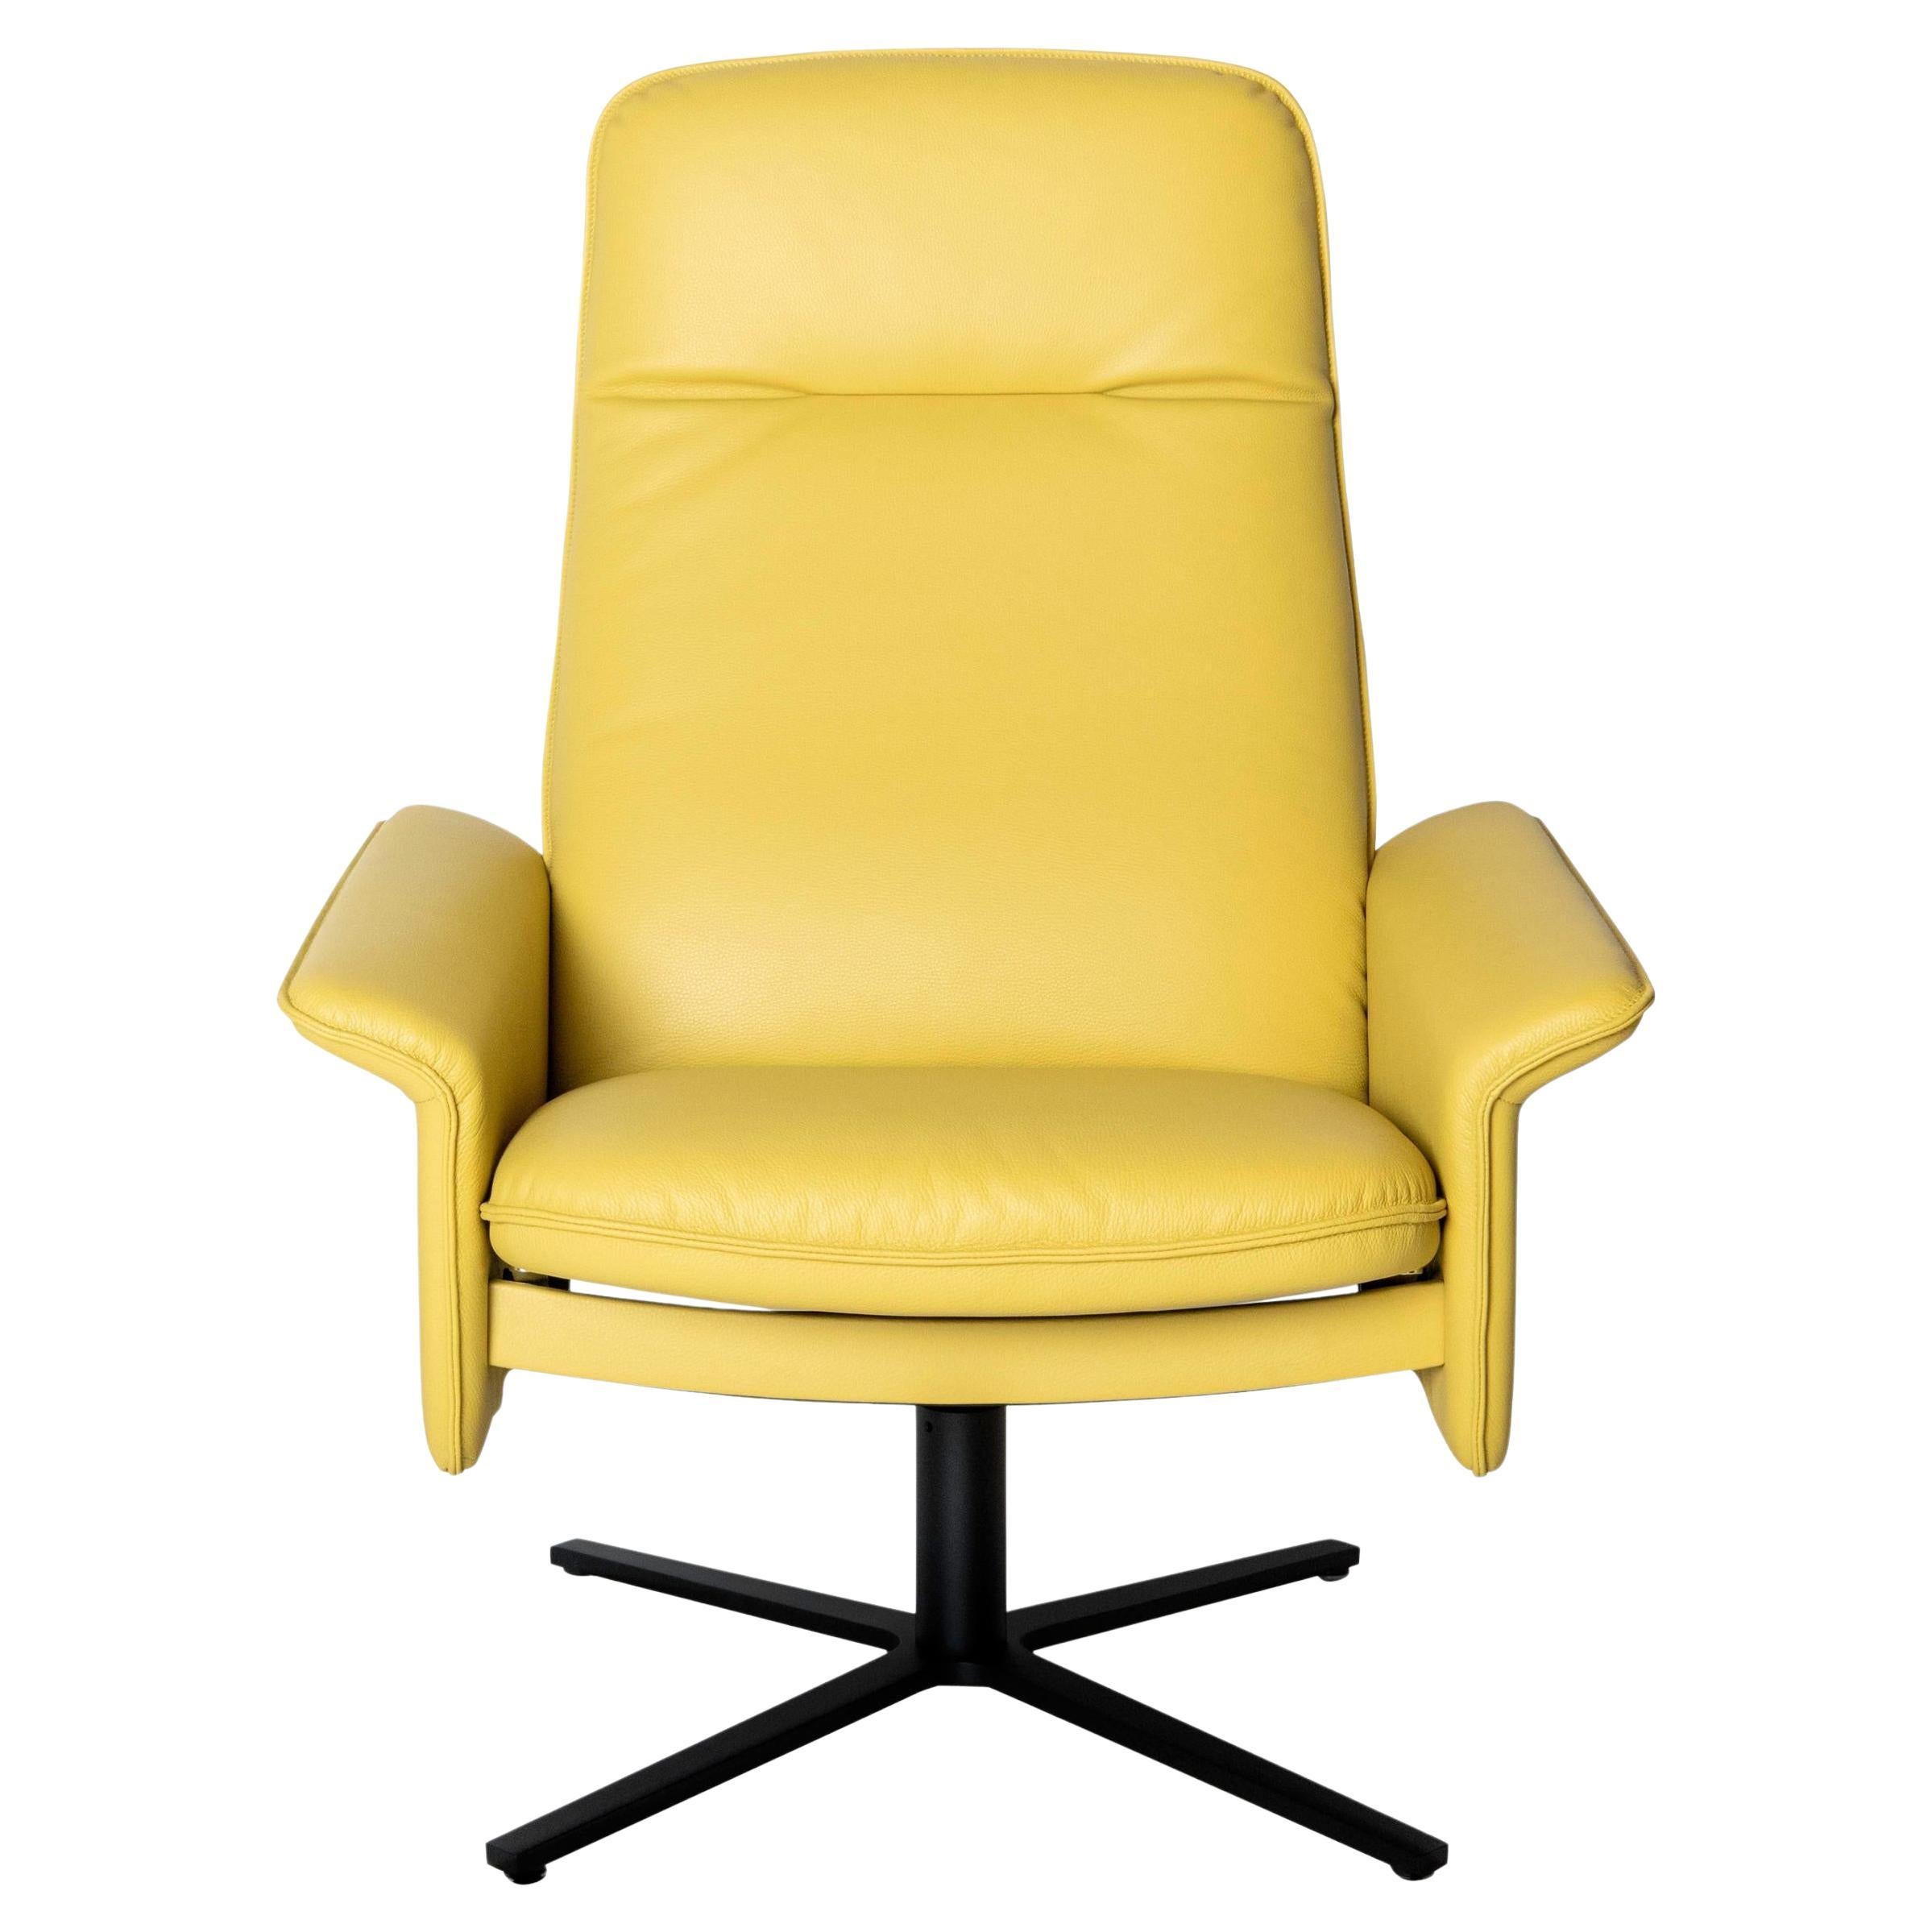 De Sede DS 55 Stuhl mit hoher Rückenlehne und gelber Lederpolsterung, De Sede Design Team